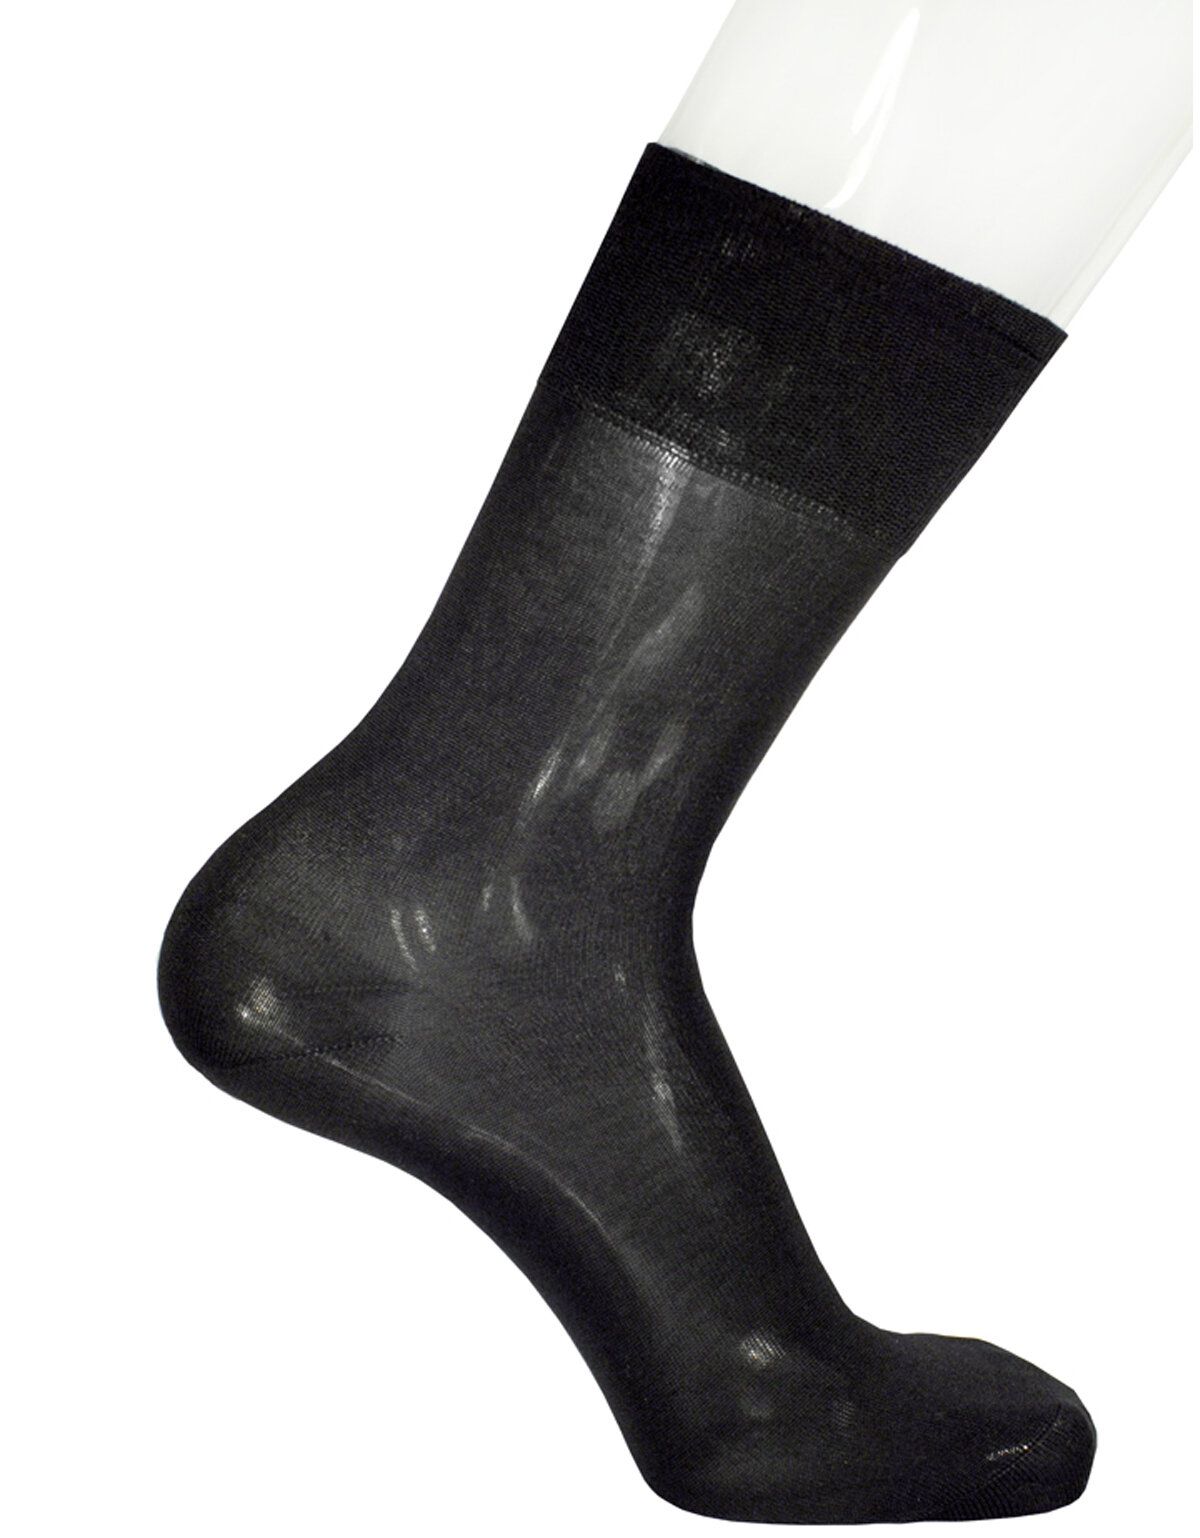 Чёрные мужские шёлковые носки Collonil Premium